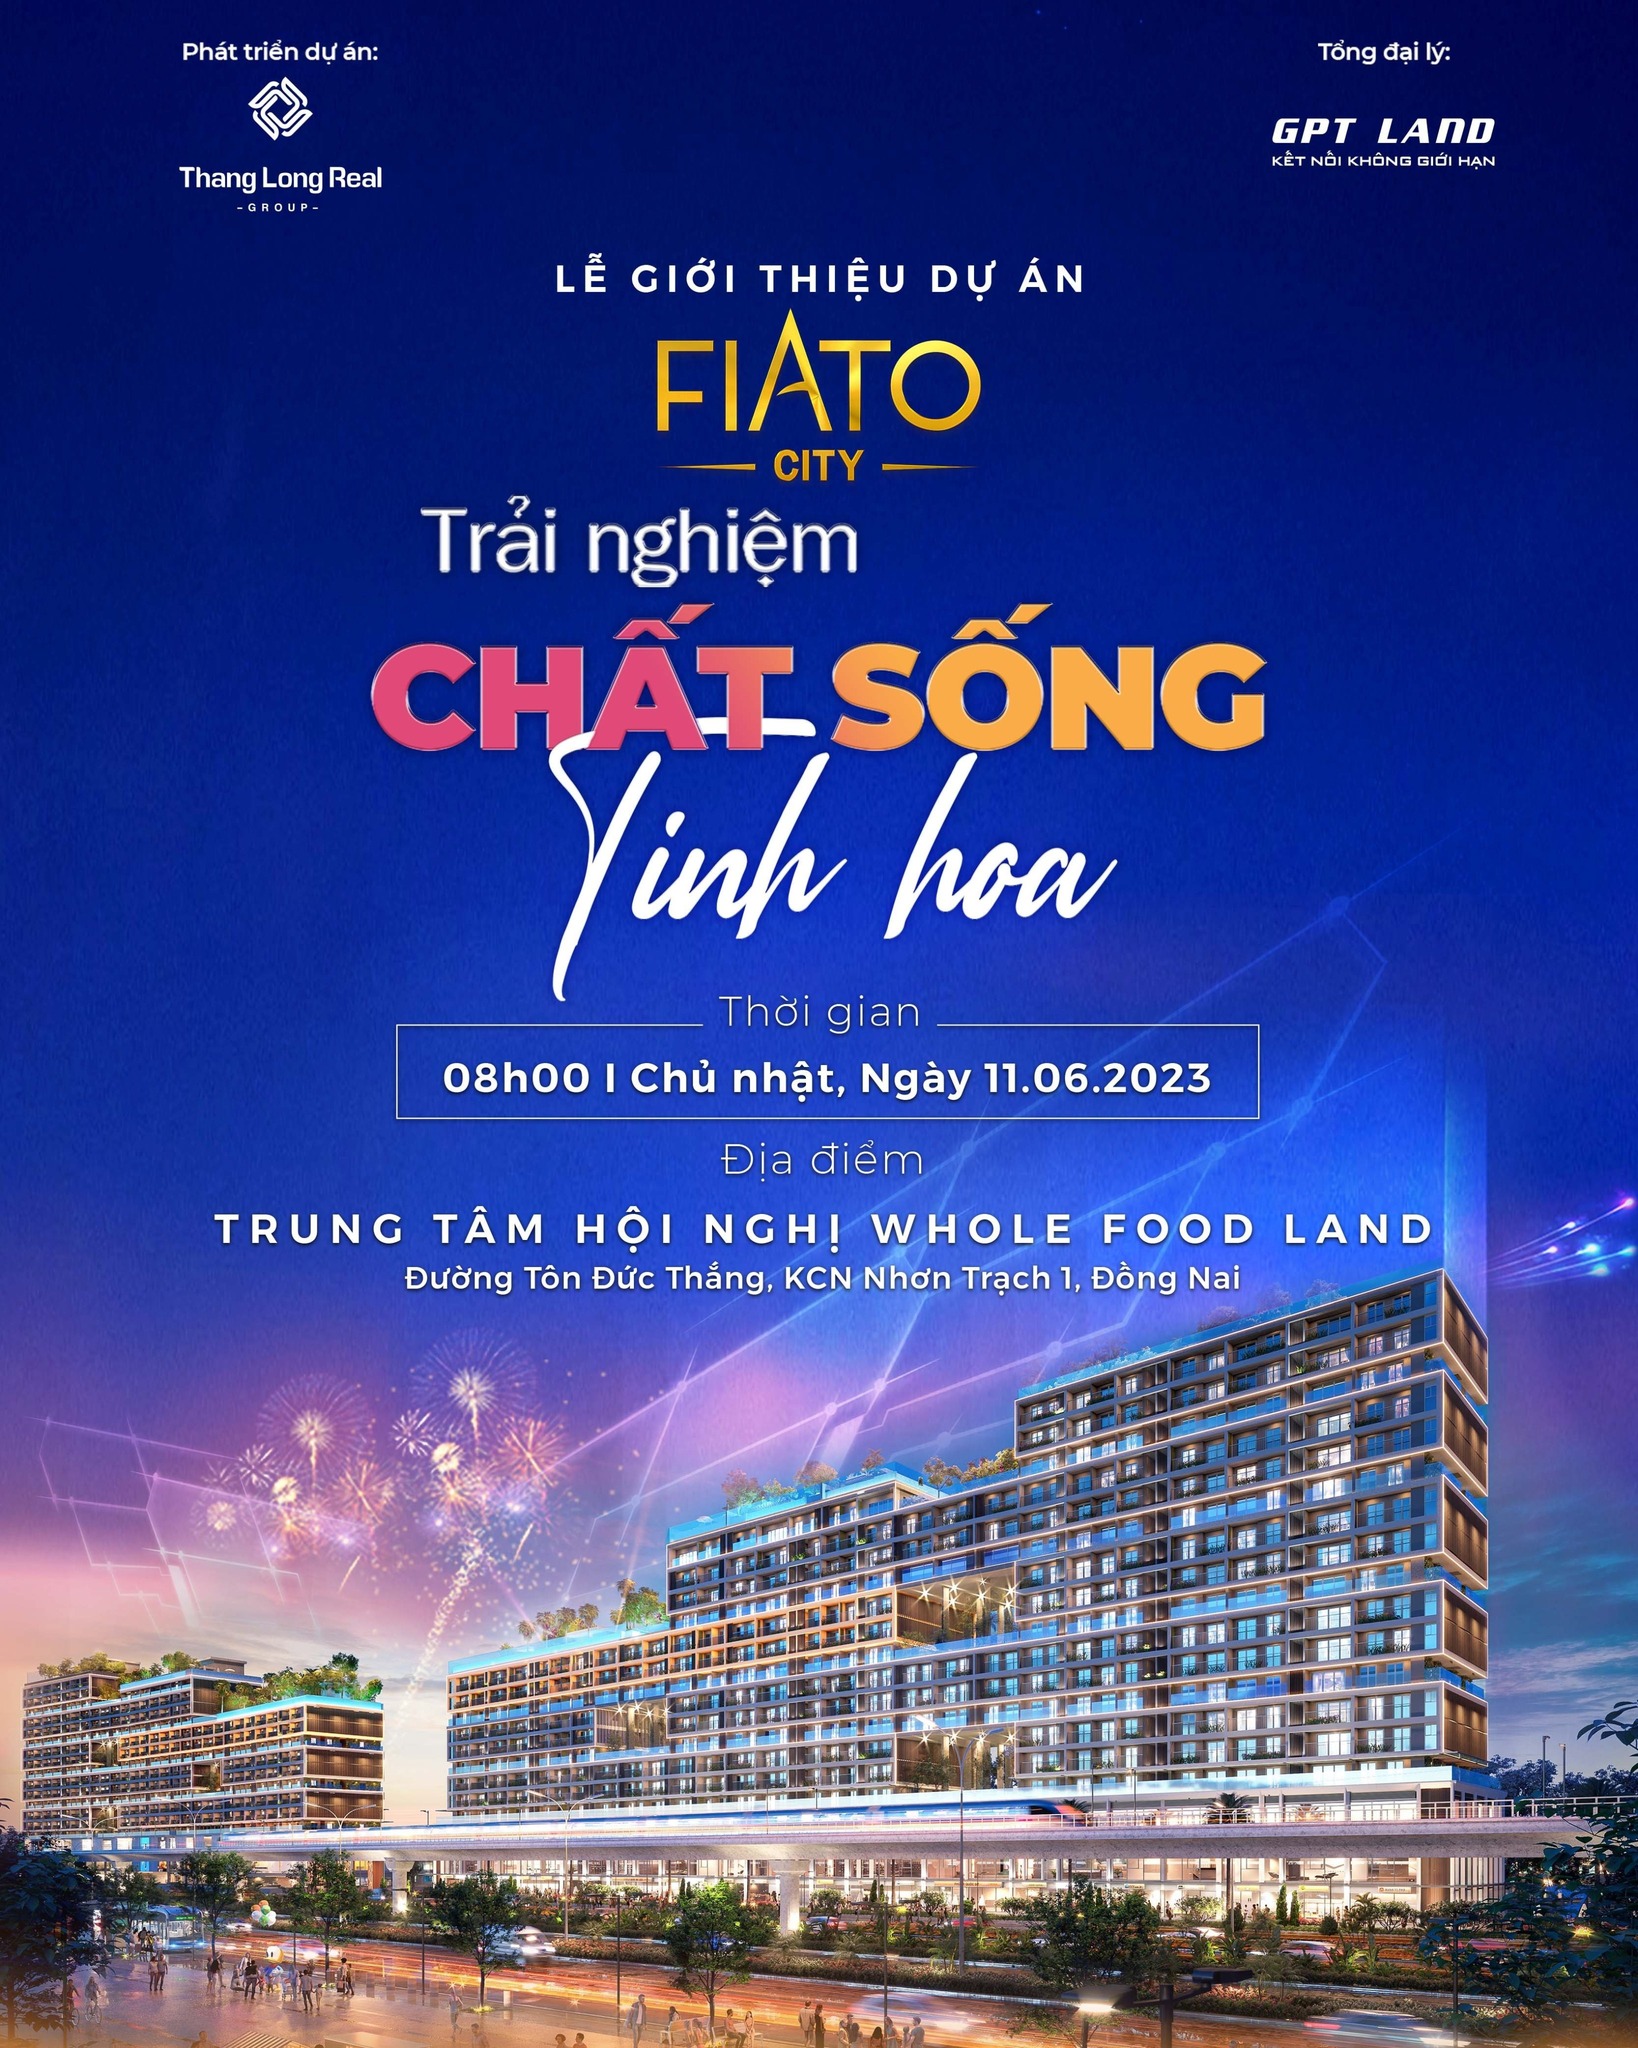 Lễ mở bán FIATO City Trải nghiệm chất sống tinh hoa - Kỷ nguyên mới cuộc sống đẳng cấp tại Nhơn Trạch